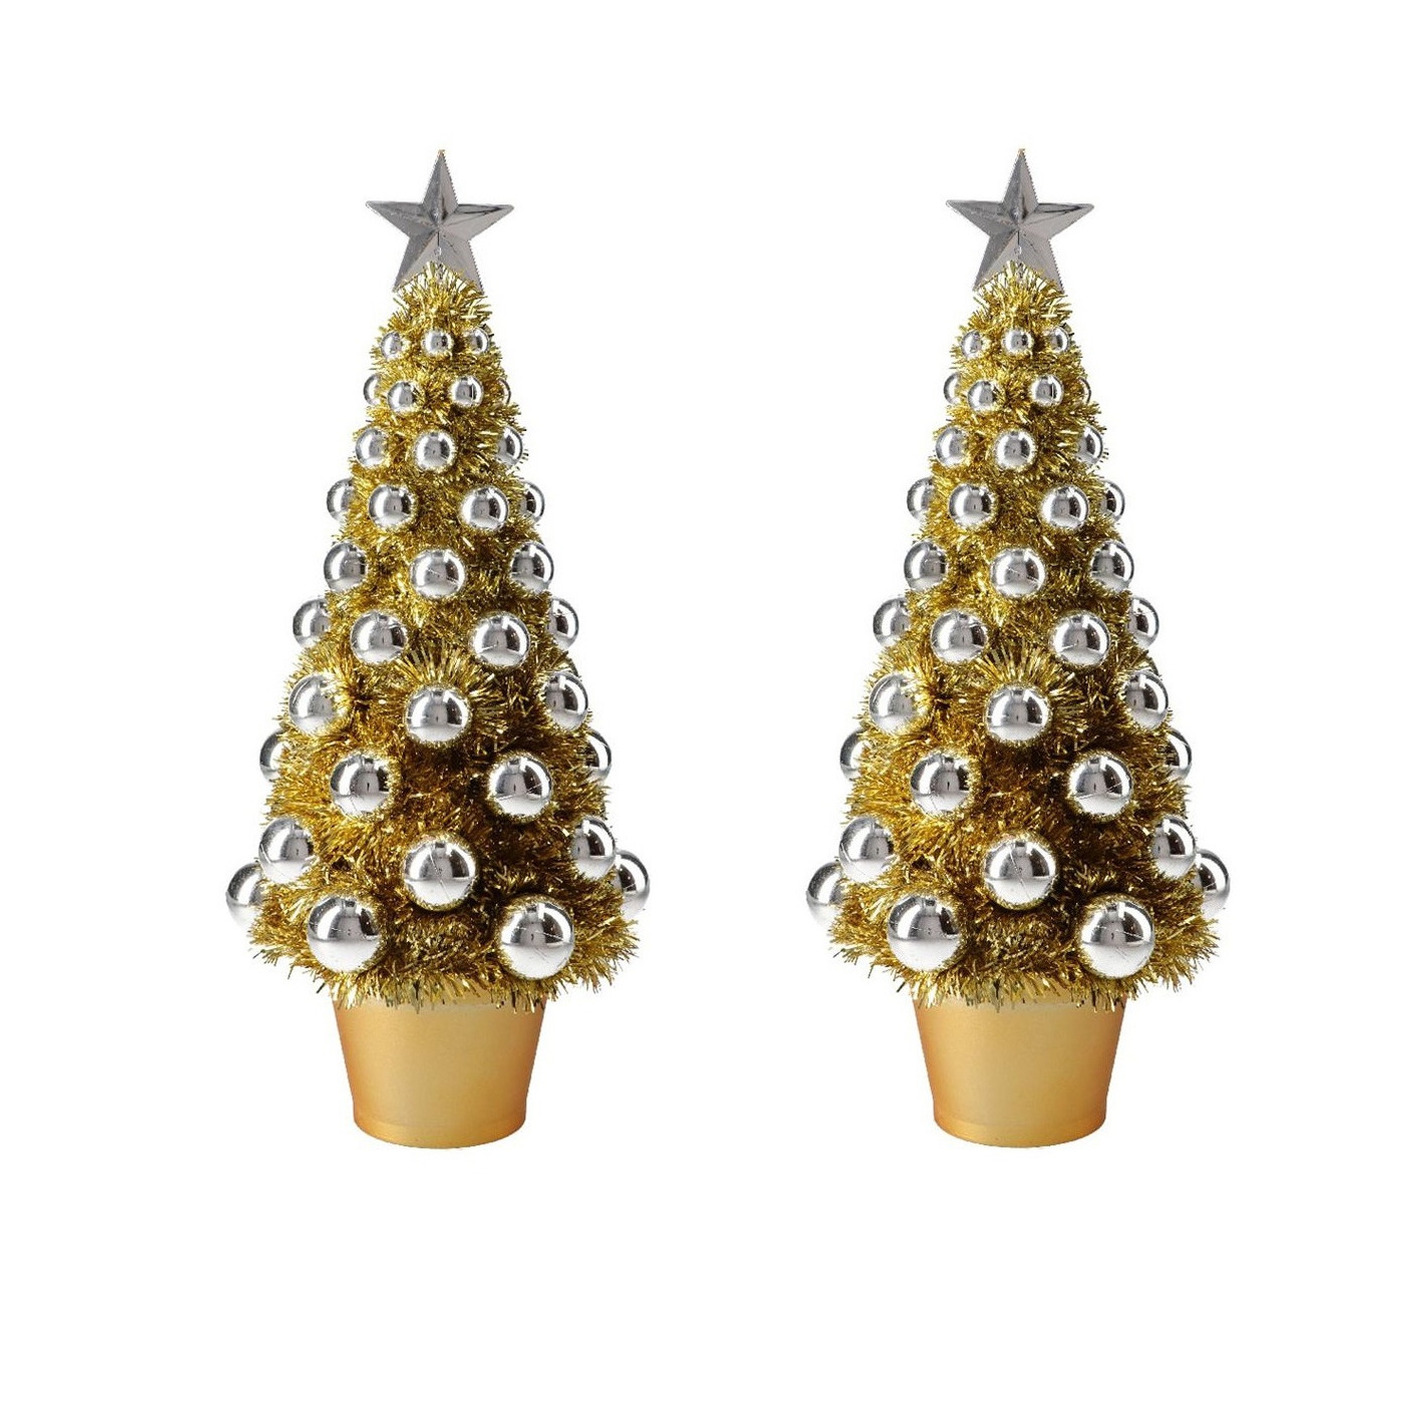 2x stuks complete mini kunst kerstboompje-kunstboompje goud-zilver met kerstballen 40 cm